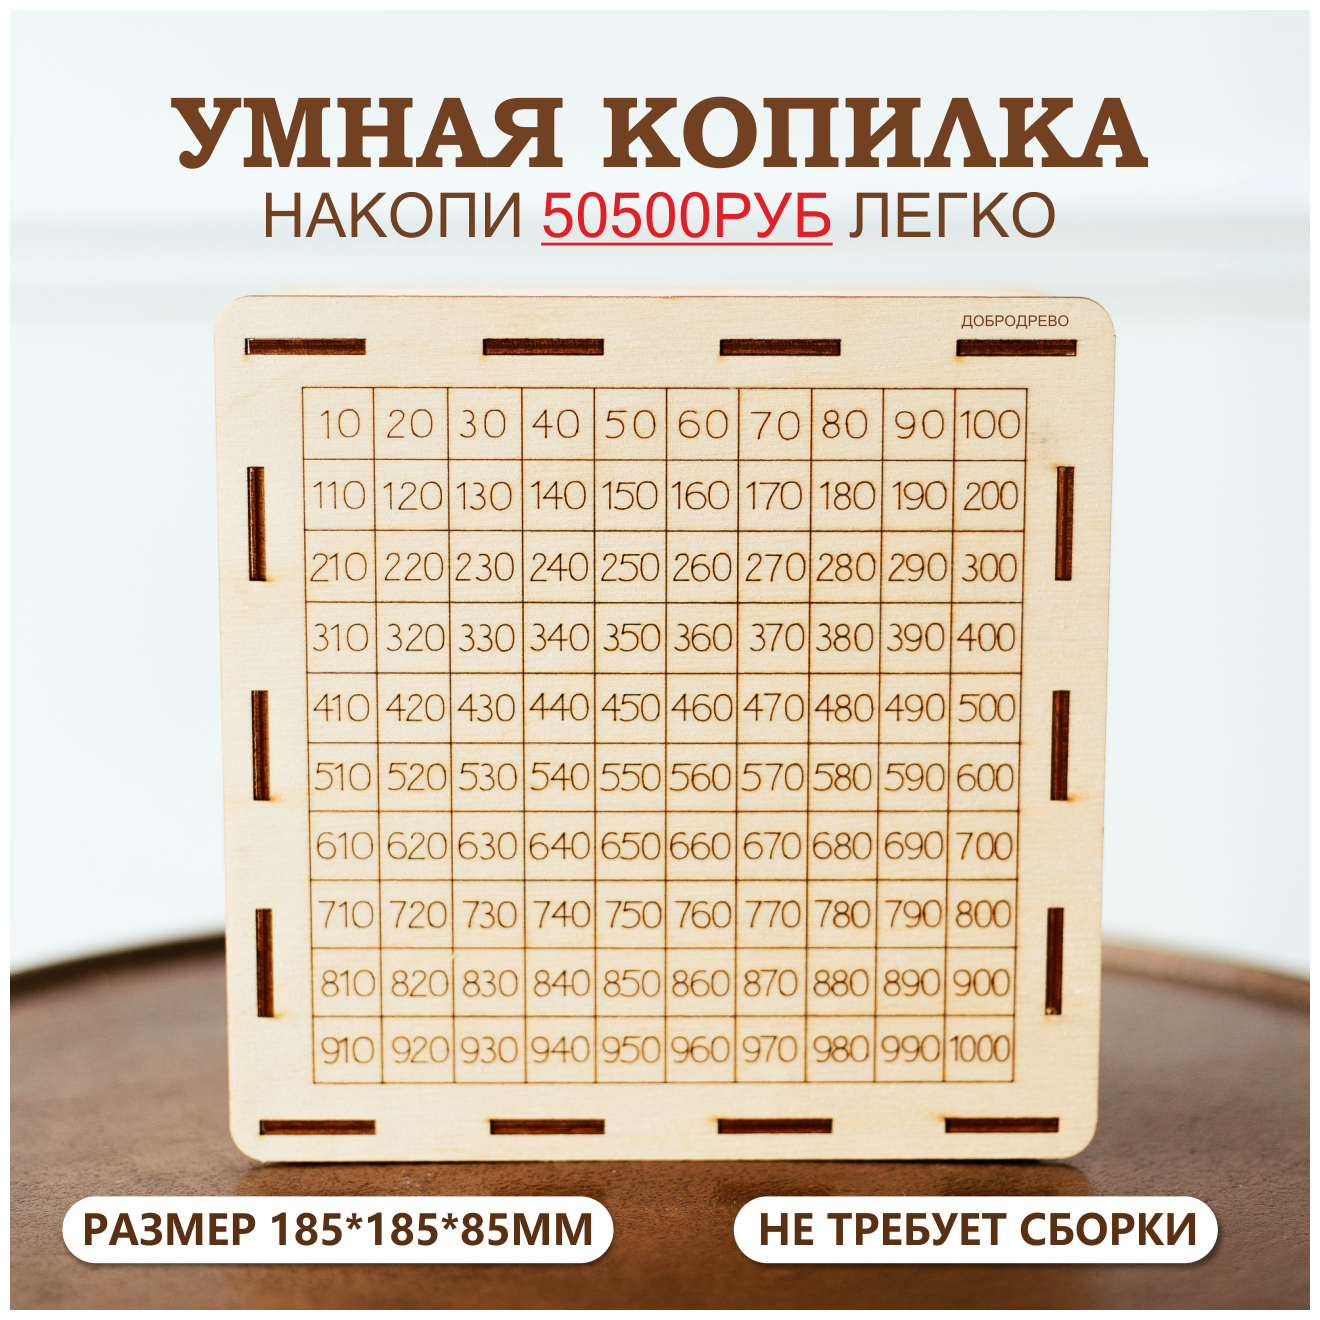 Умная копилка - 50500руб. за 100 дней — купить в интернет-магазине по  низкой цене на Яндекс Маркете